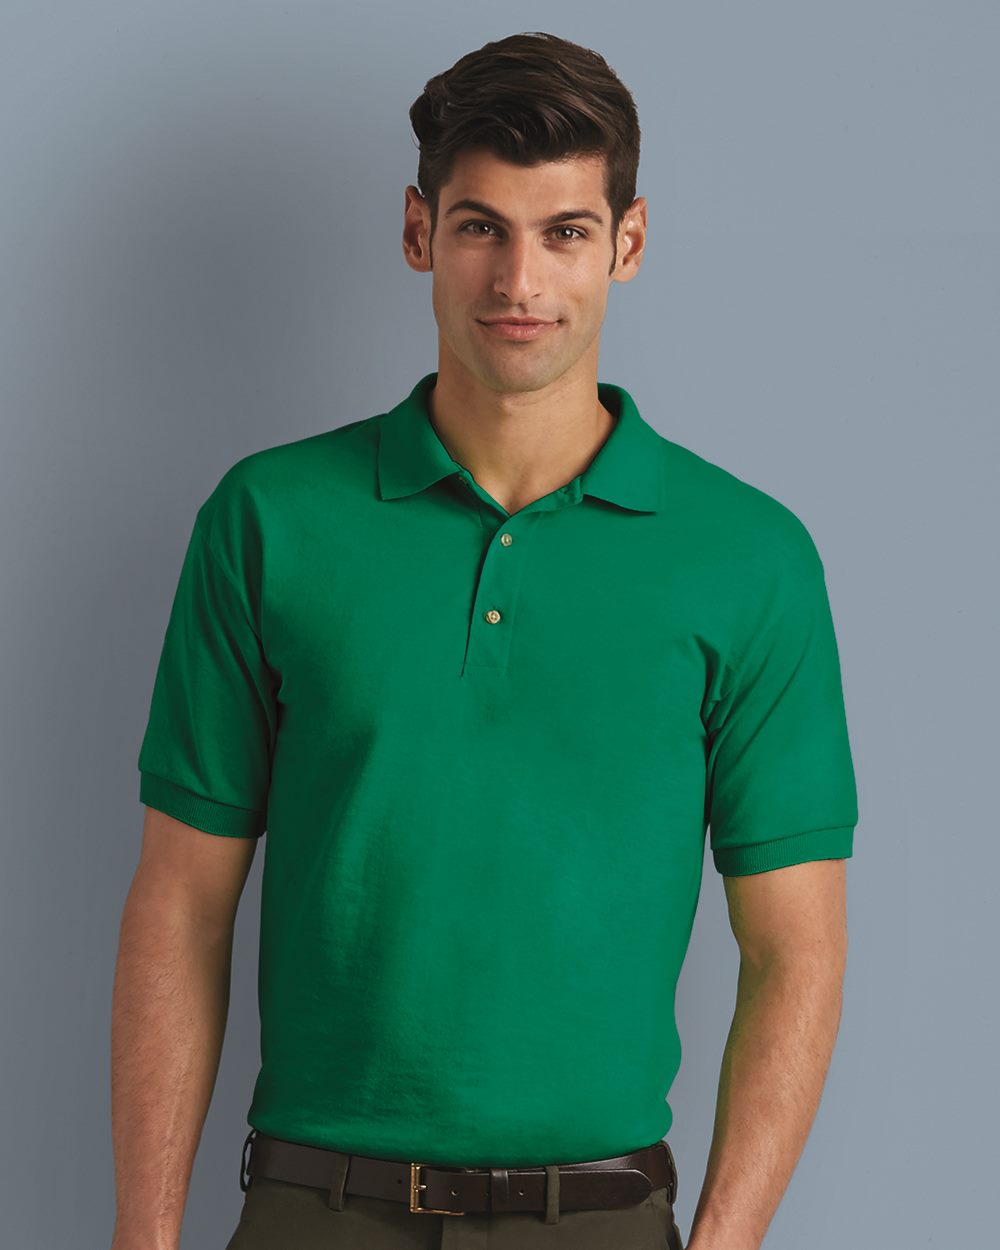 Gildan 8800 6 oz. DryBlend Jersey Knit Sport Shirt $8.23 - Polo/Sport Shirts